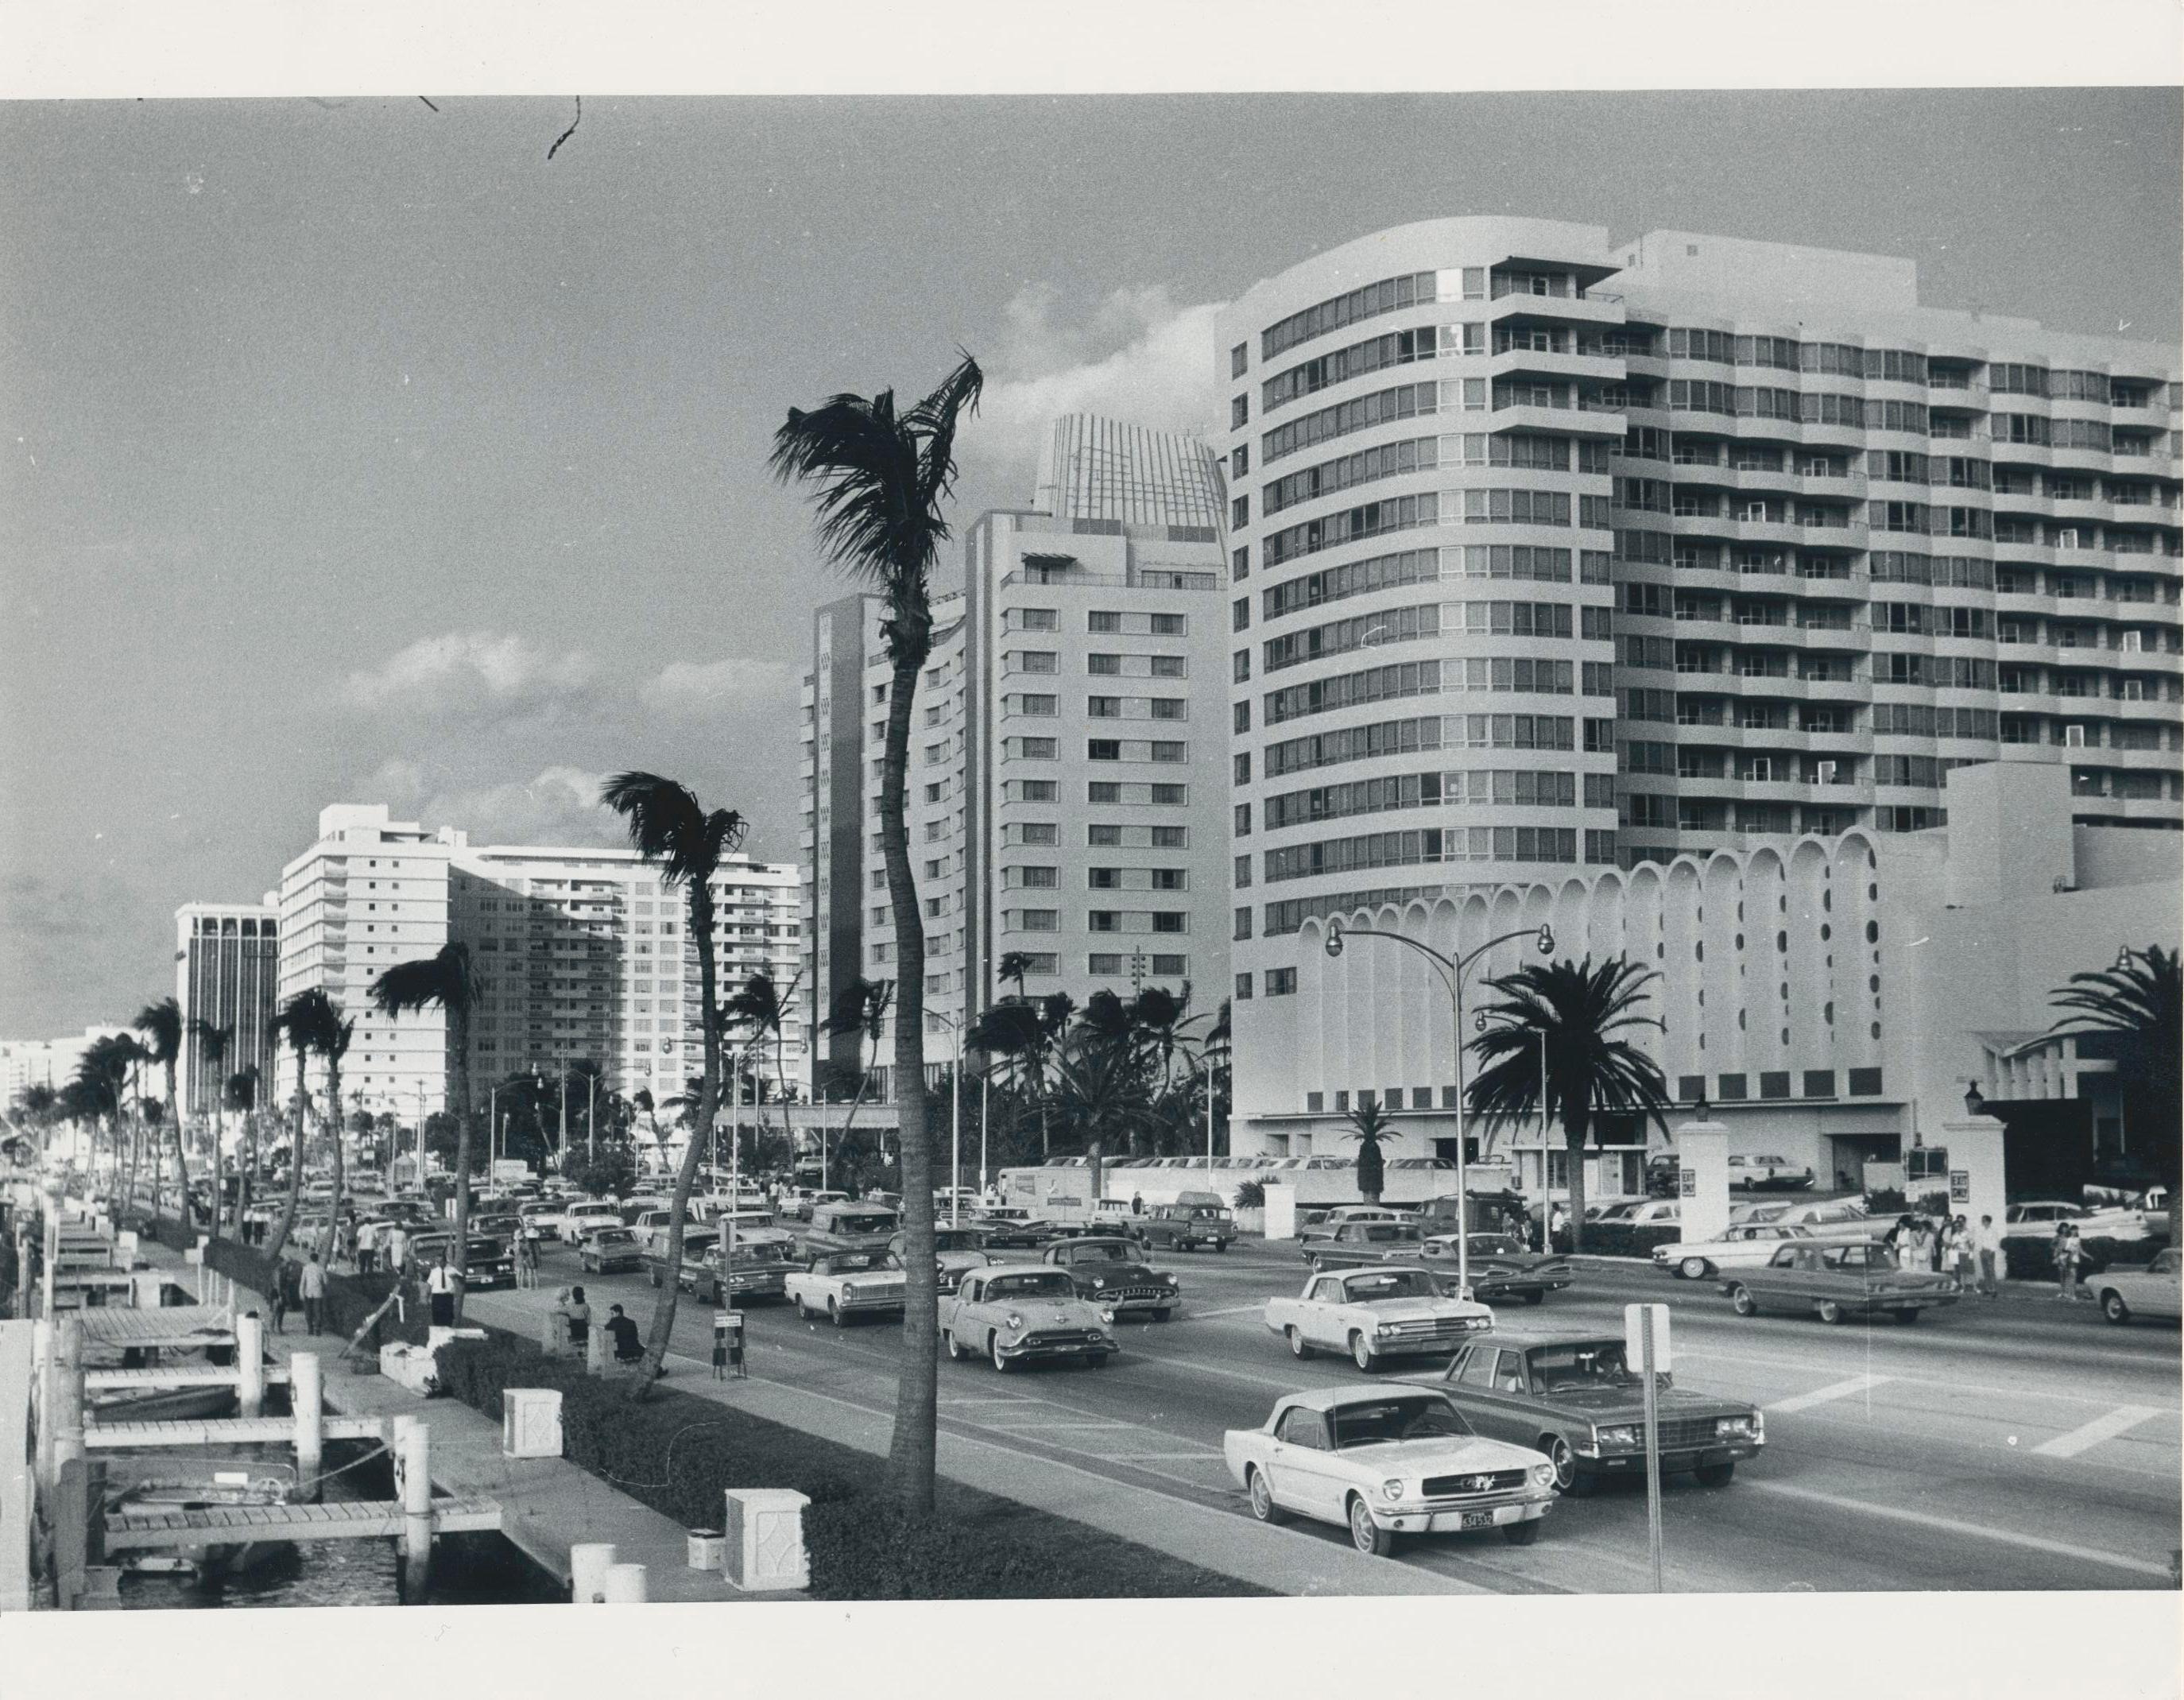 Black and White Photograph Erich Andres - Miami Beach, photographie de rue, noir et blanc, États-Unis, années 1960, 18,2 x 23,3 cm